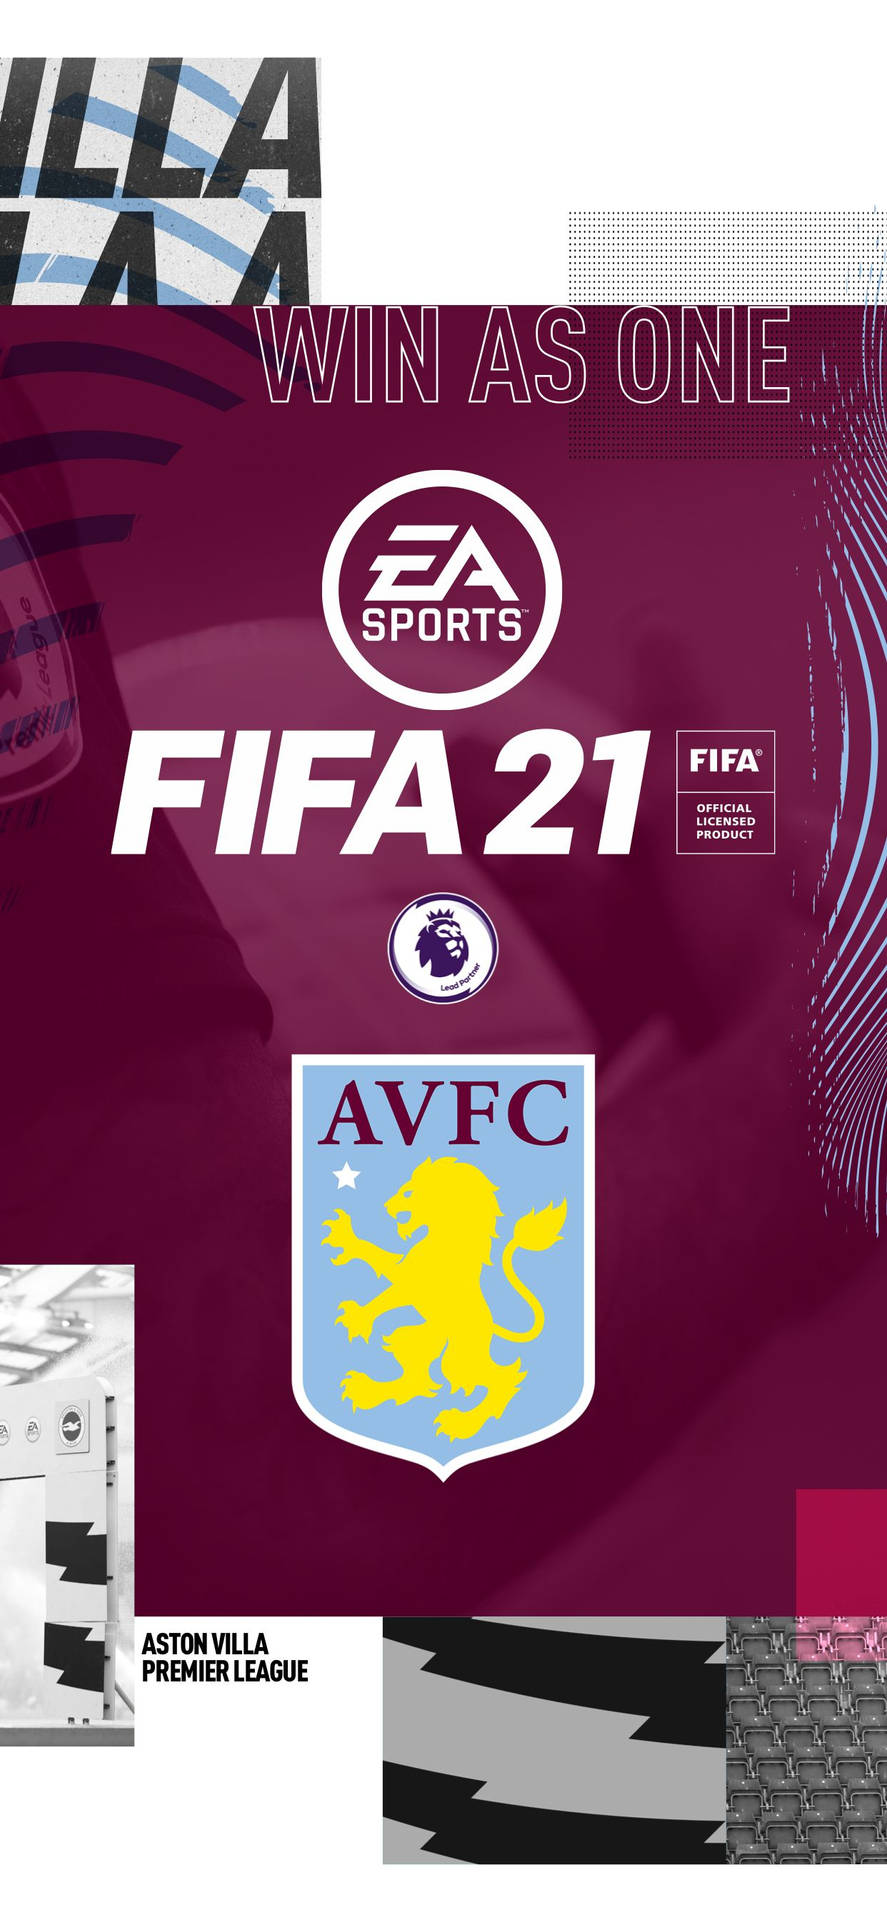 Aston Villa's Poster On Fifa 21 Background